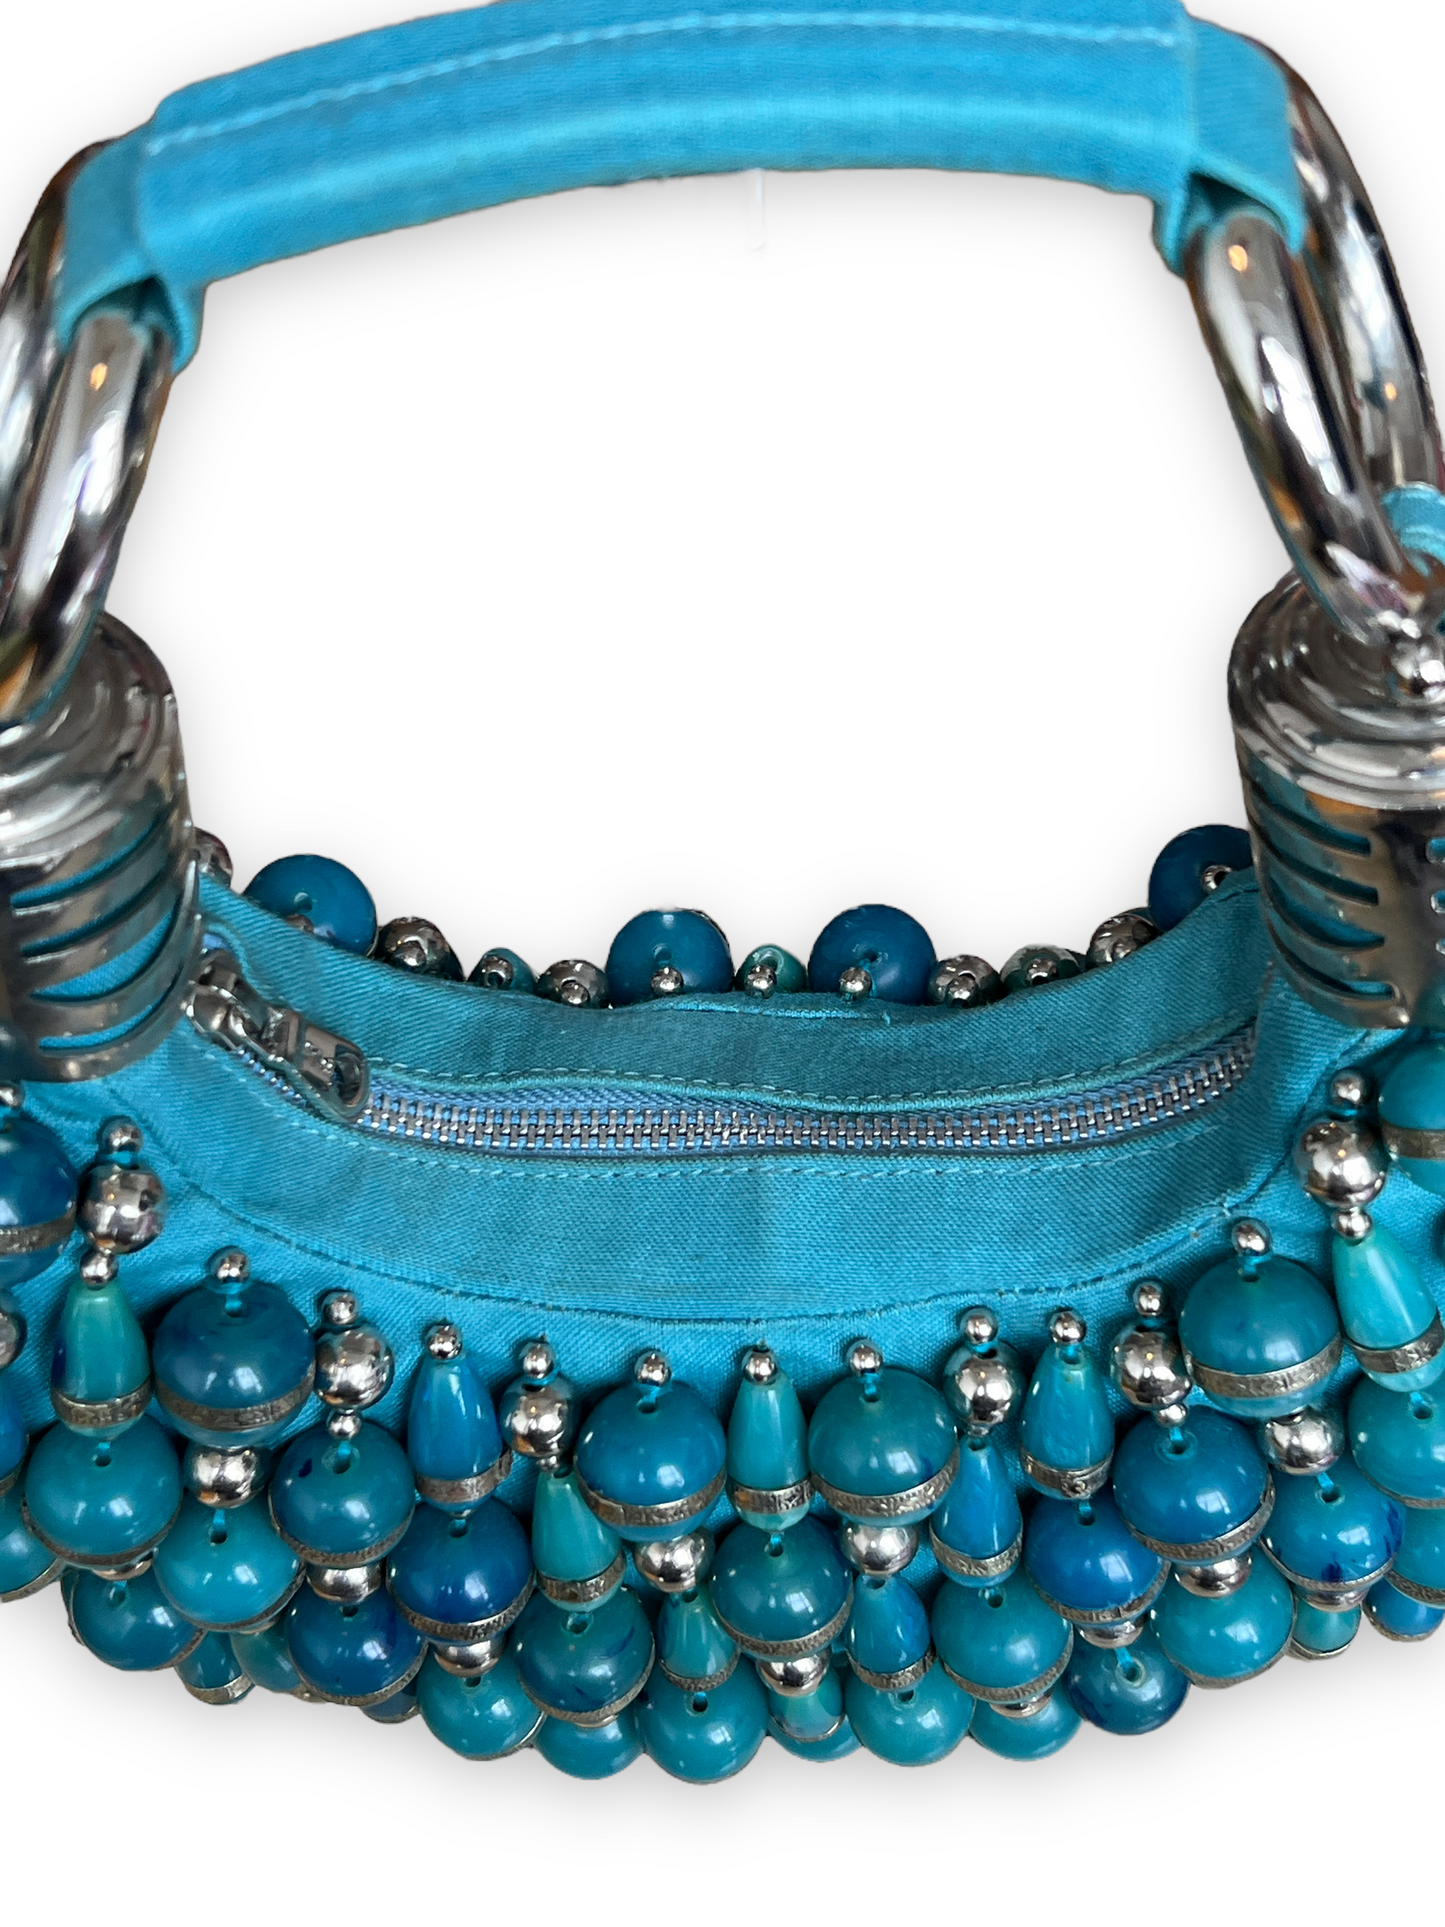 2000s Chloé Beaded Bracelet Bag - Blue